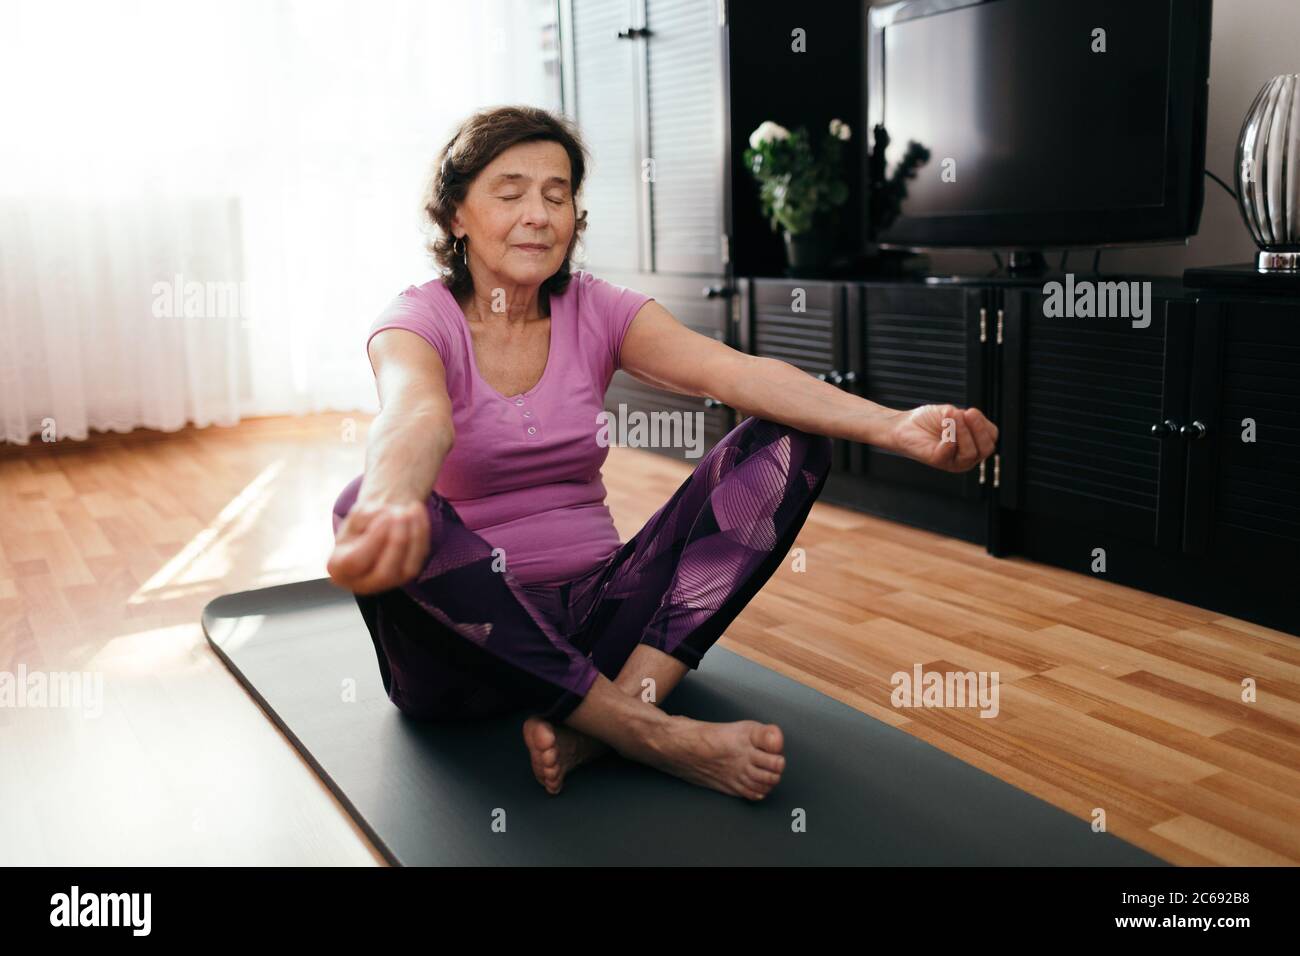 Fokussierte ältere Frau, die zu Hause Yoga macht. 70 Jahre alte Frau sitzt auf Fitness-Matte mit ausgestreckten Händen auf den Knien Ausübung Yoga in Liv Stockfoto